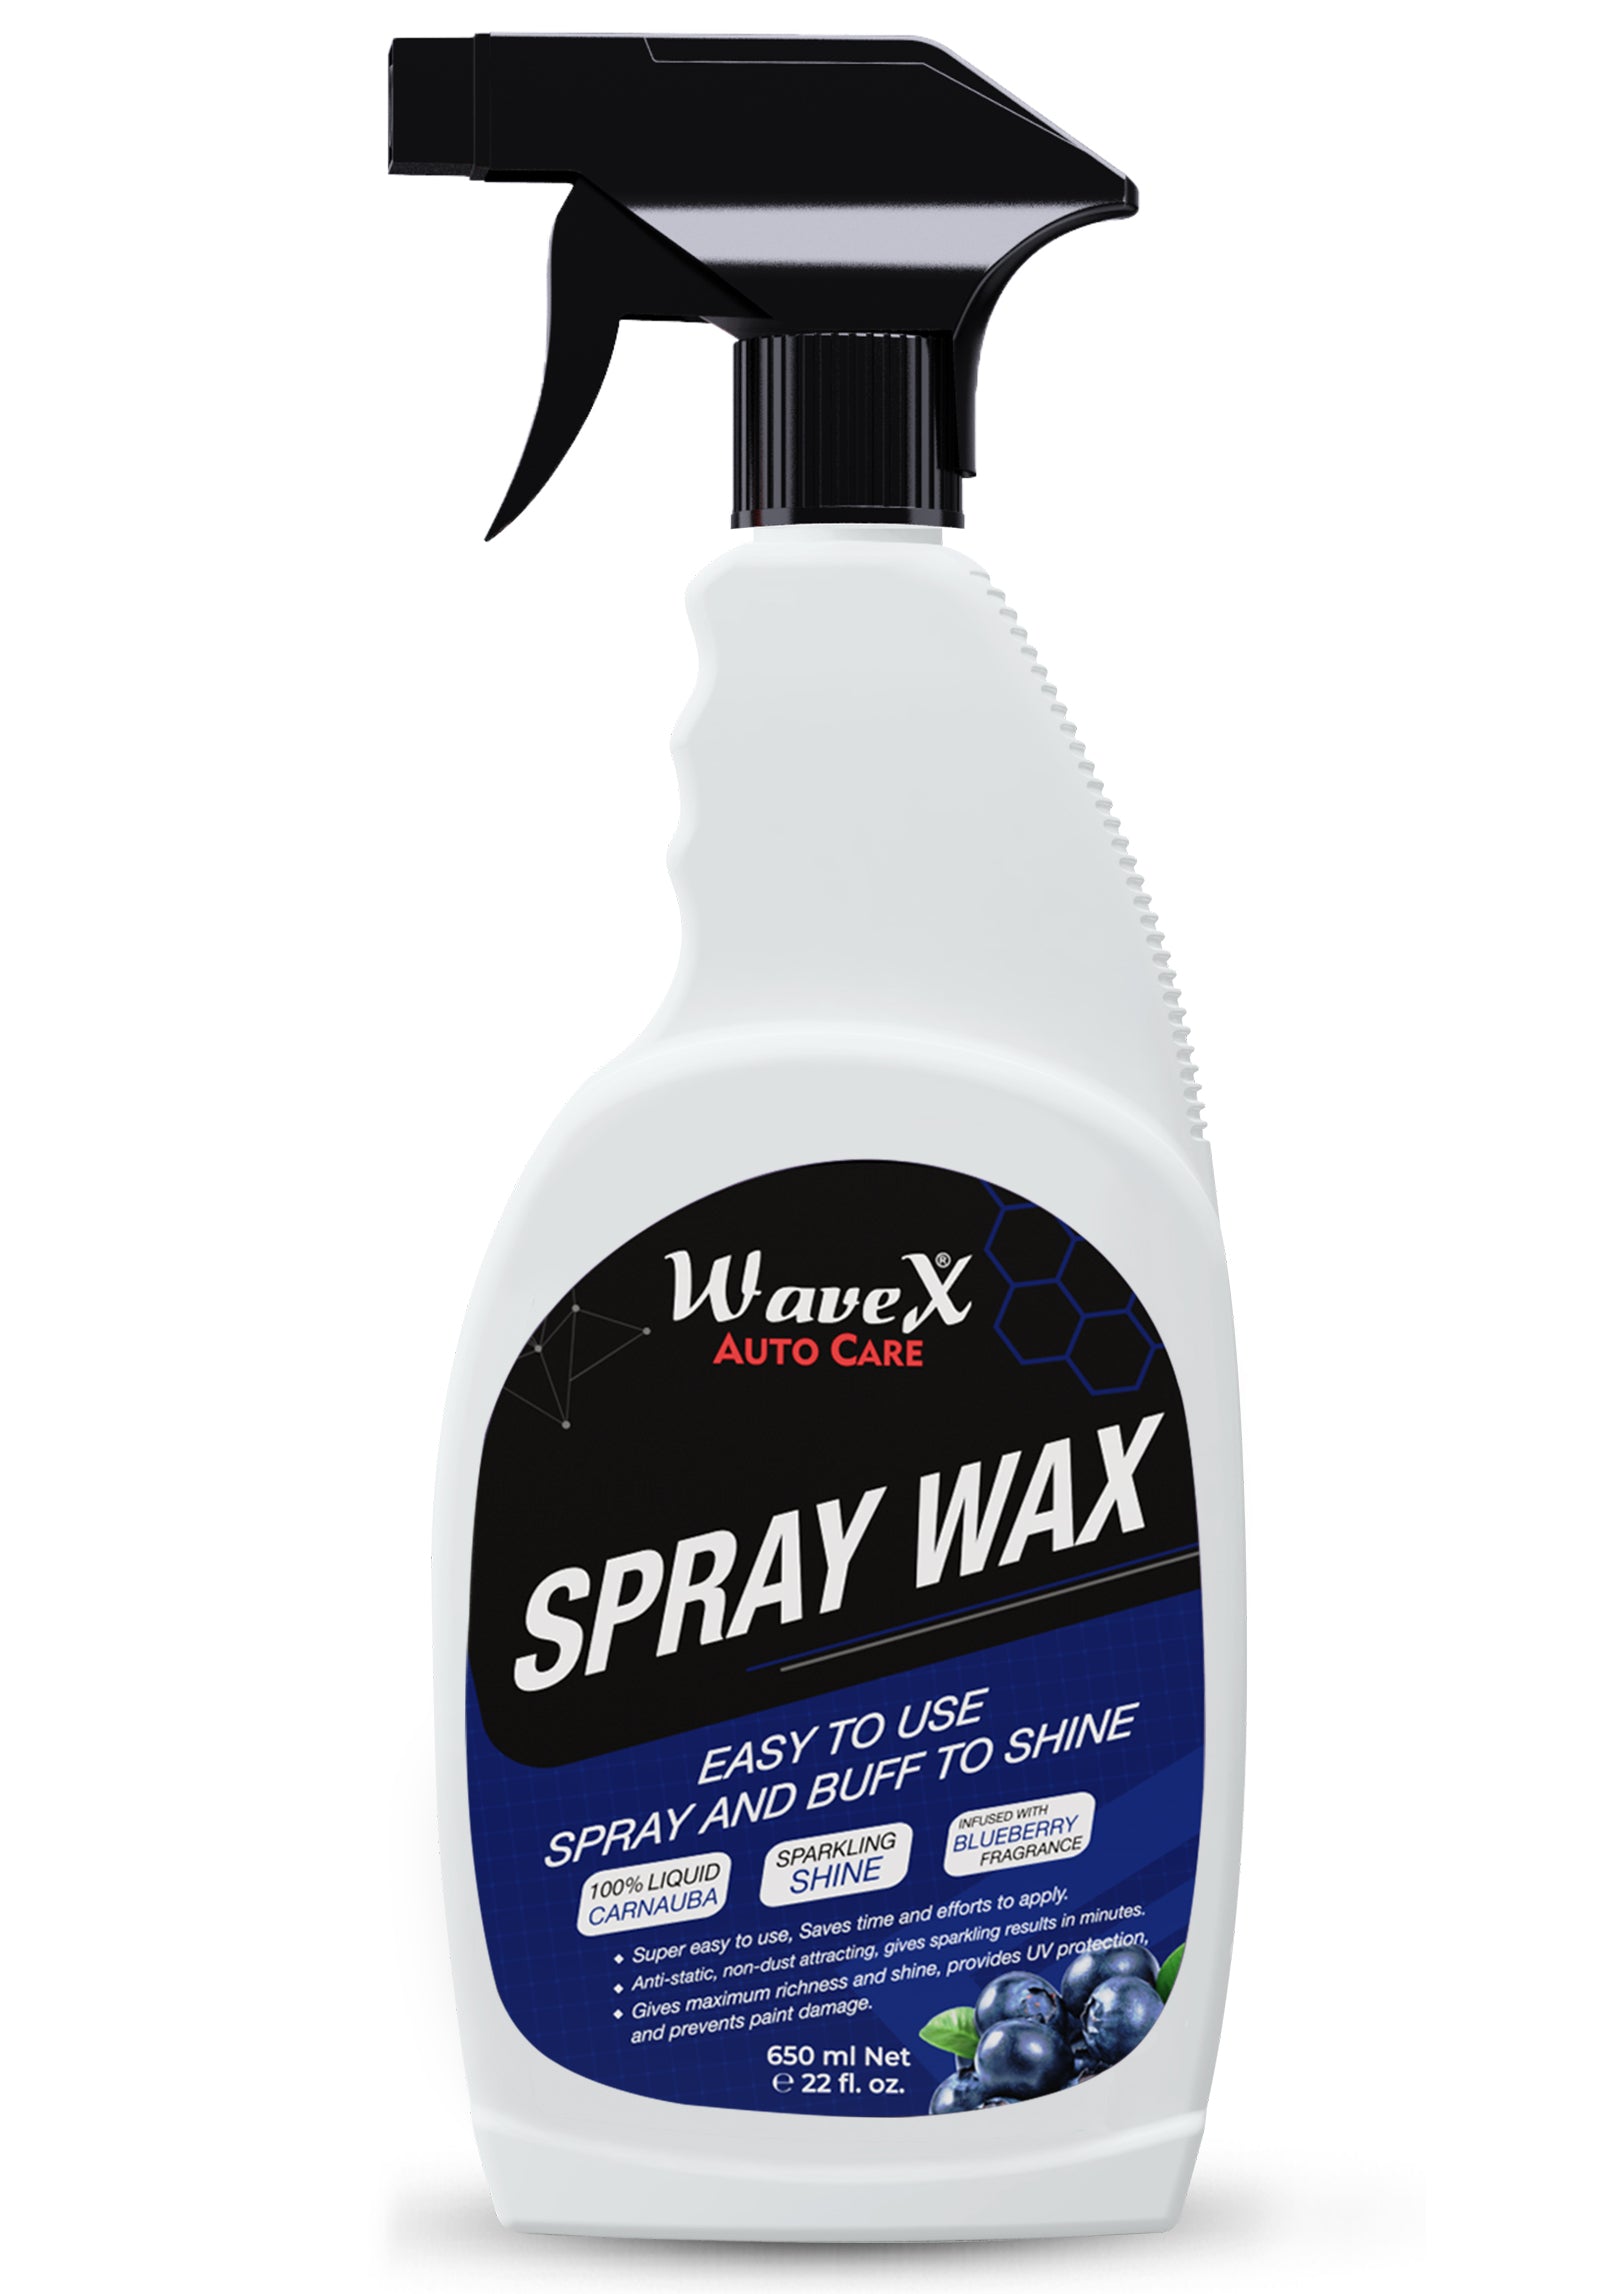 Formula 4 Spray Wax